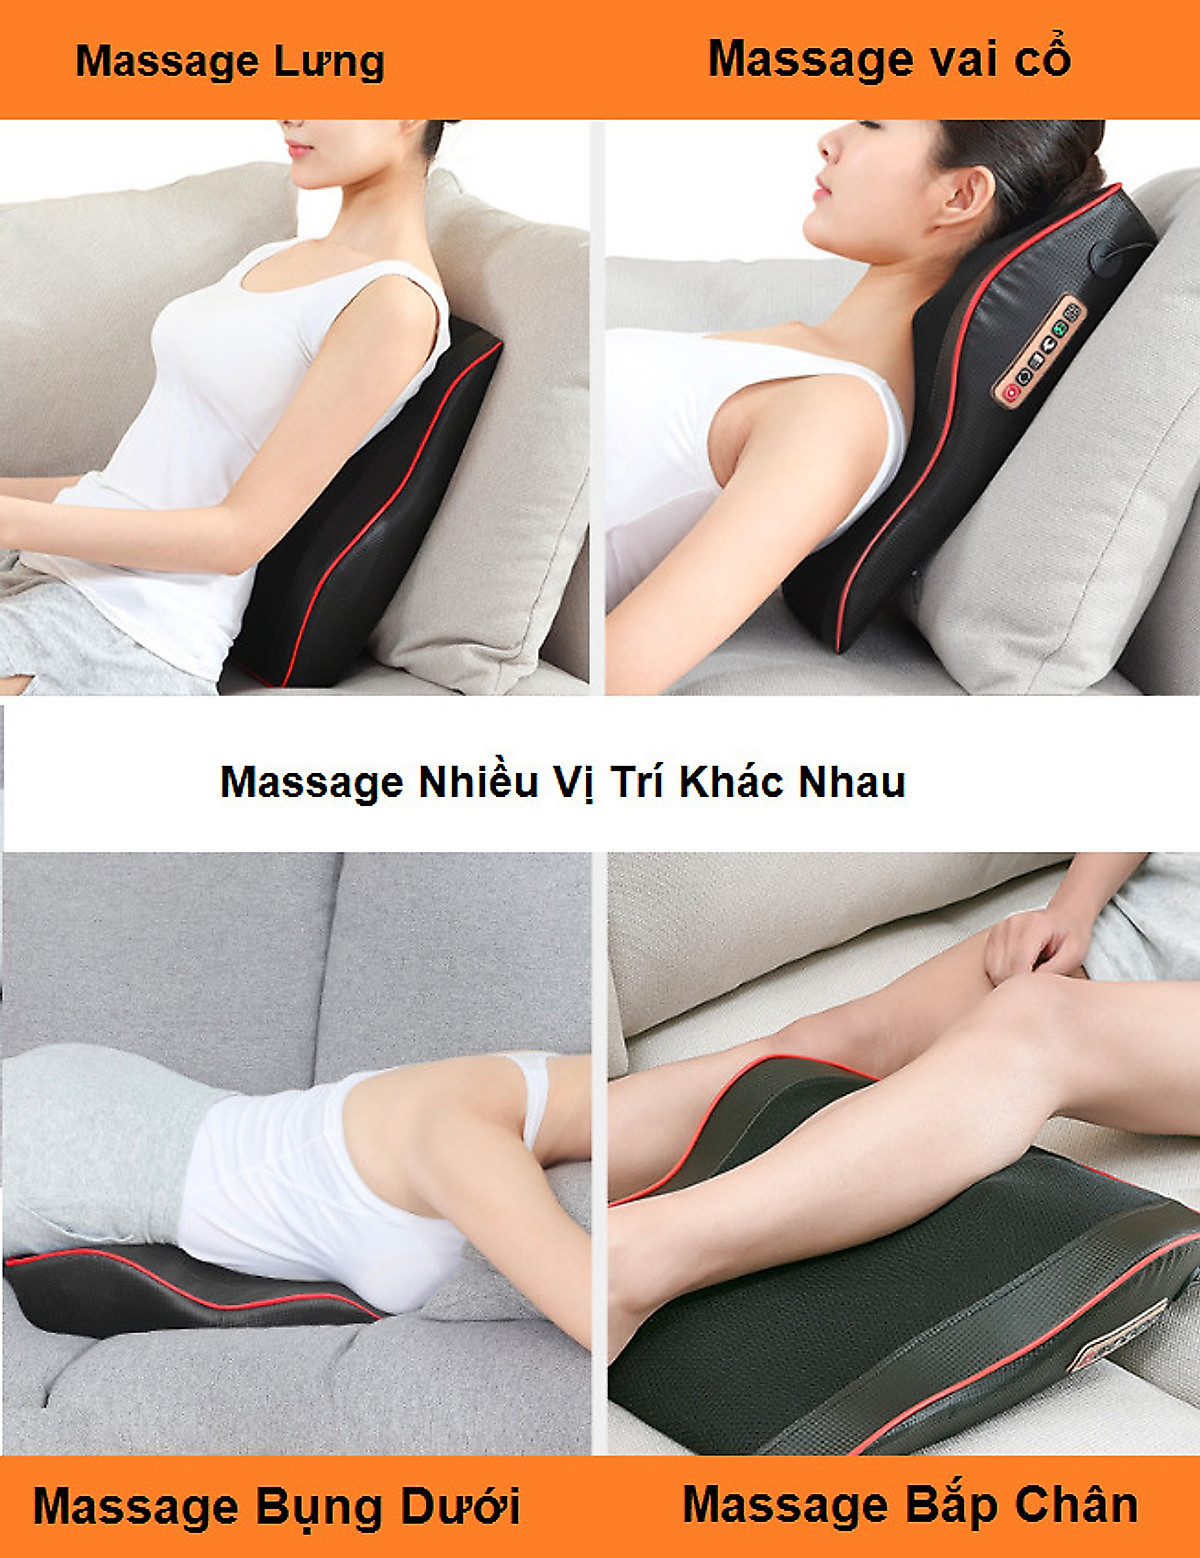 Đệm, nệm, ghế massage toàn thân Rowanto Nhật Bản kết hợp túi hơi chống nhức mỏi, hỗ trợ giảm đau cơ bắp, thư giãn, giảm stress, lưu thông tuần hoàn máu tặng kèm tinh dầu gừng